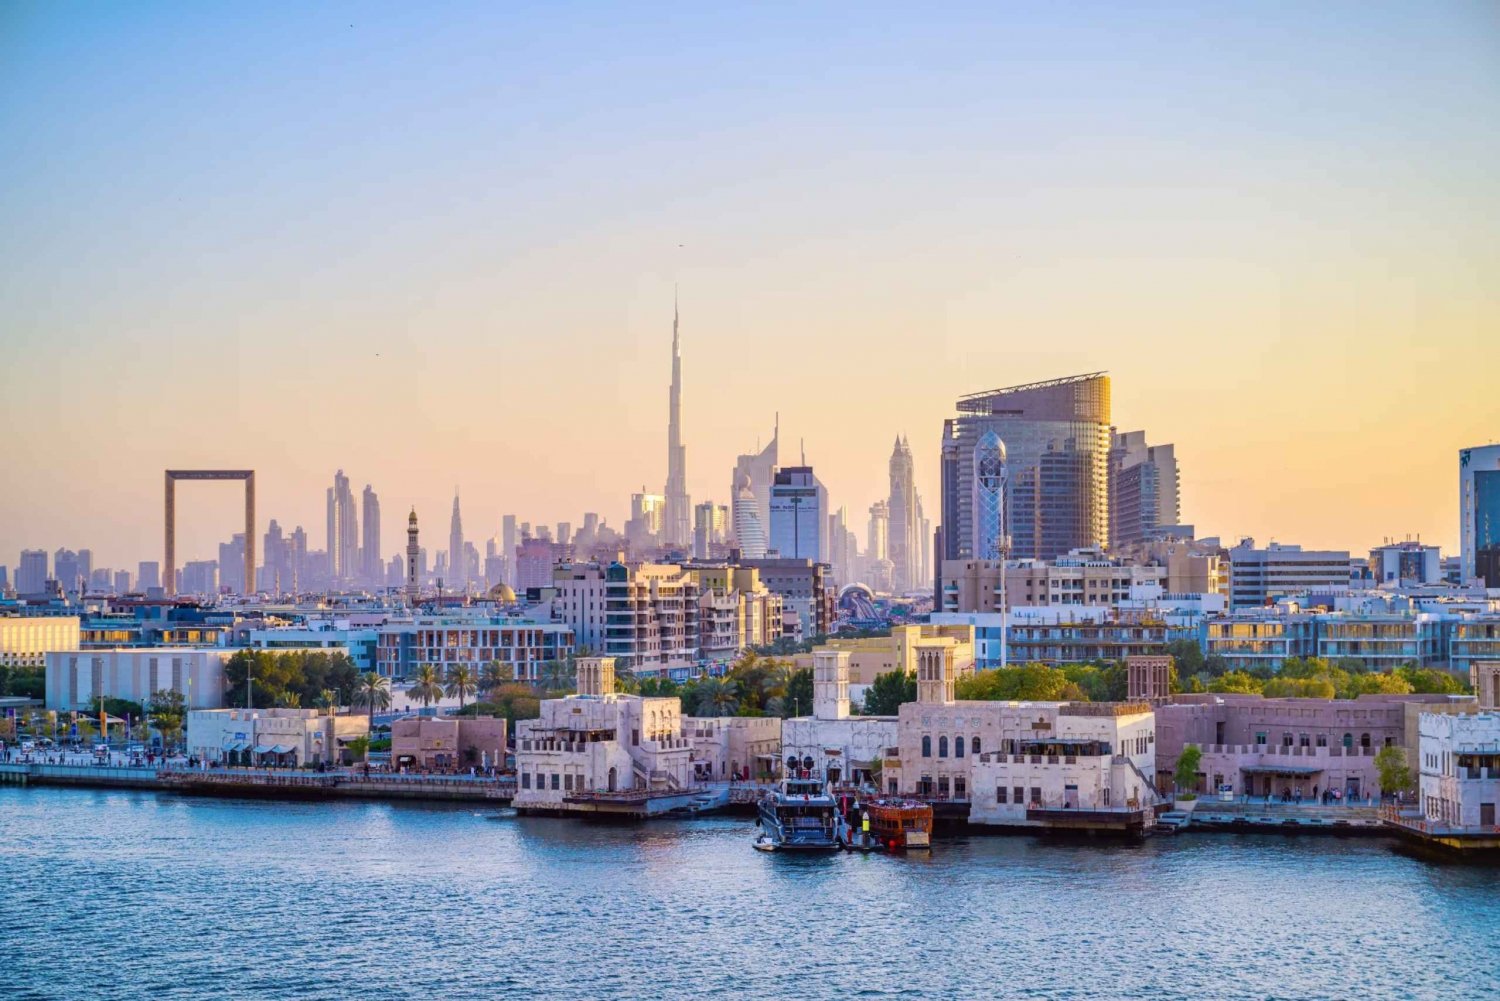 La vecchia Dubai: Tour a piedi con giro in barca, souk e musei